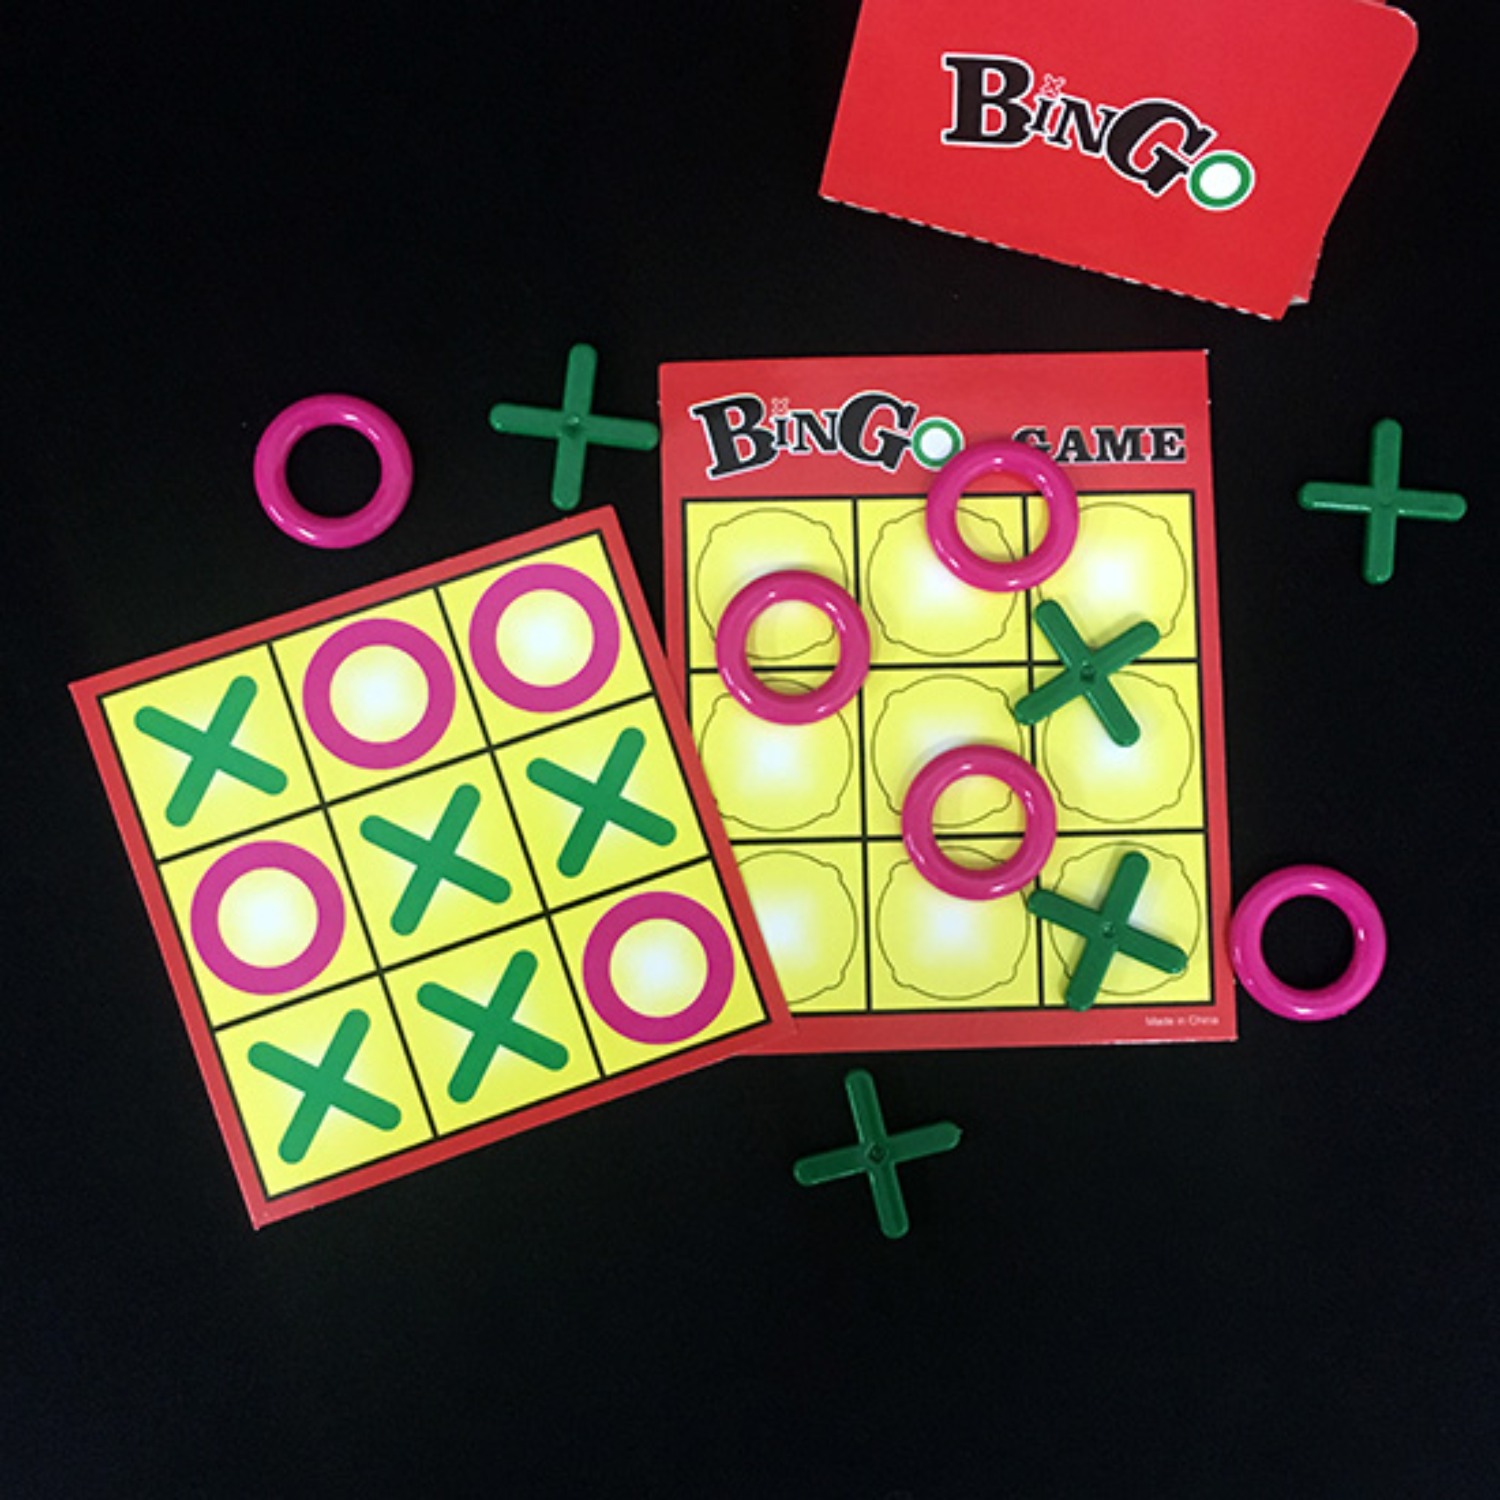 [빙고게임]Bingo Game 게임과 마술을 함께 즐겨보십시오.게임의 결과가 예언되어 있습니다.